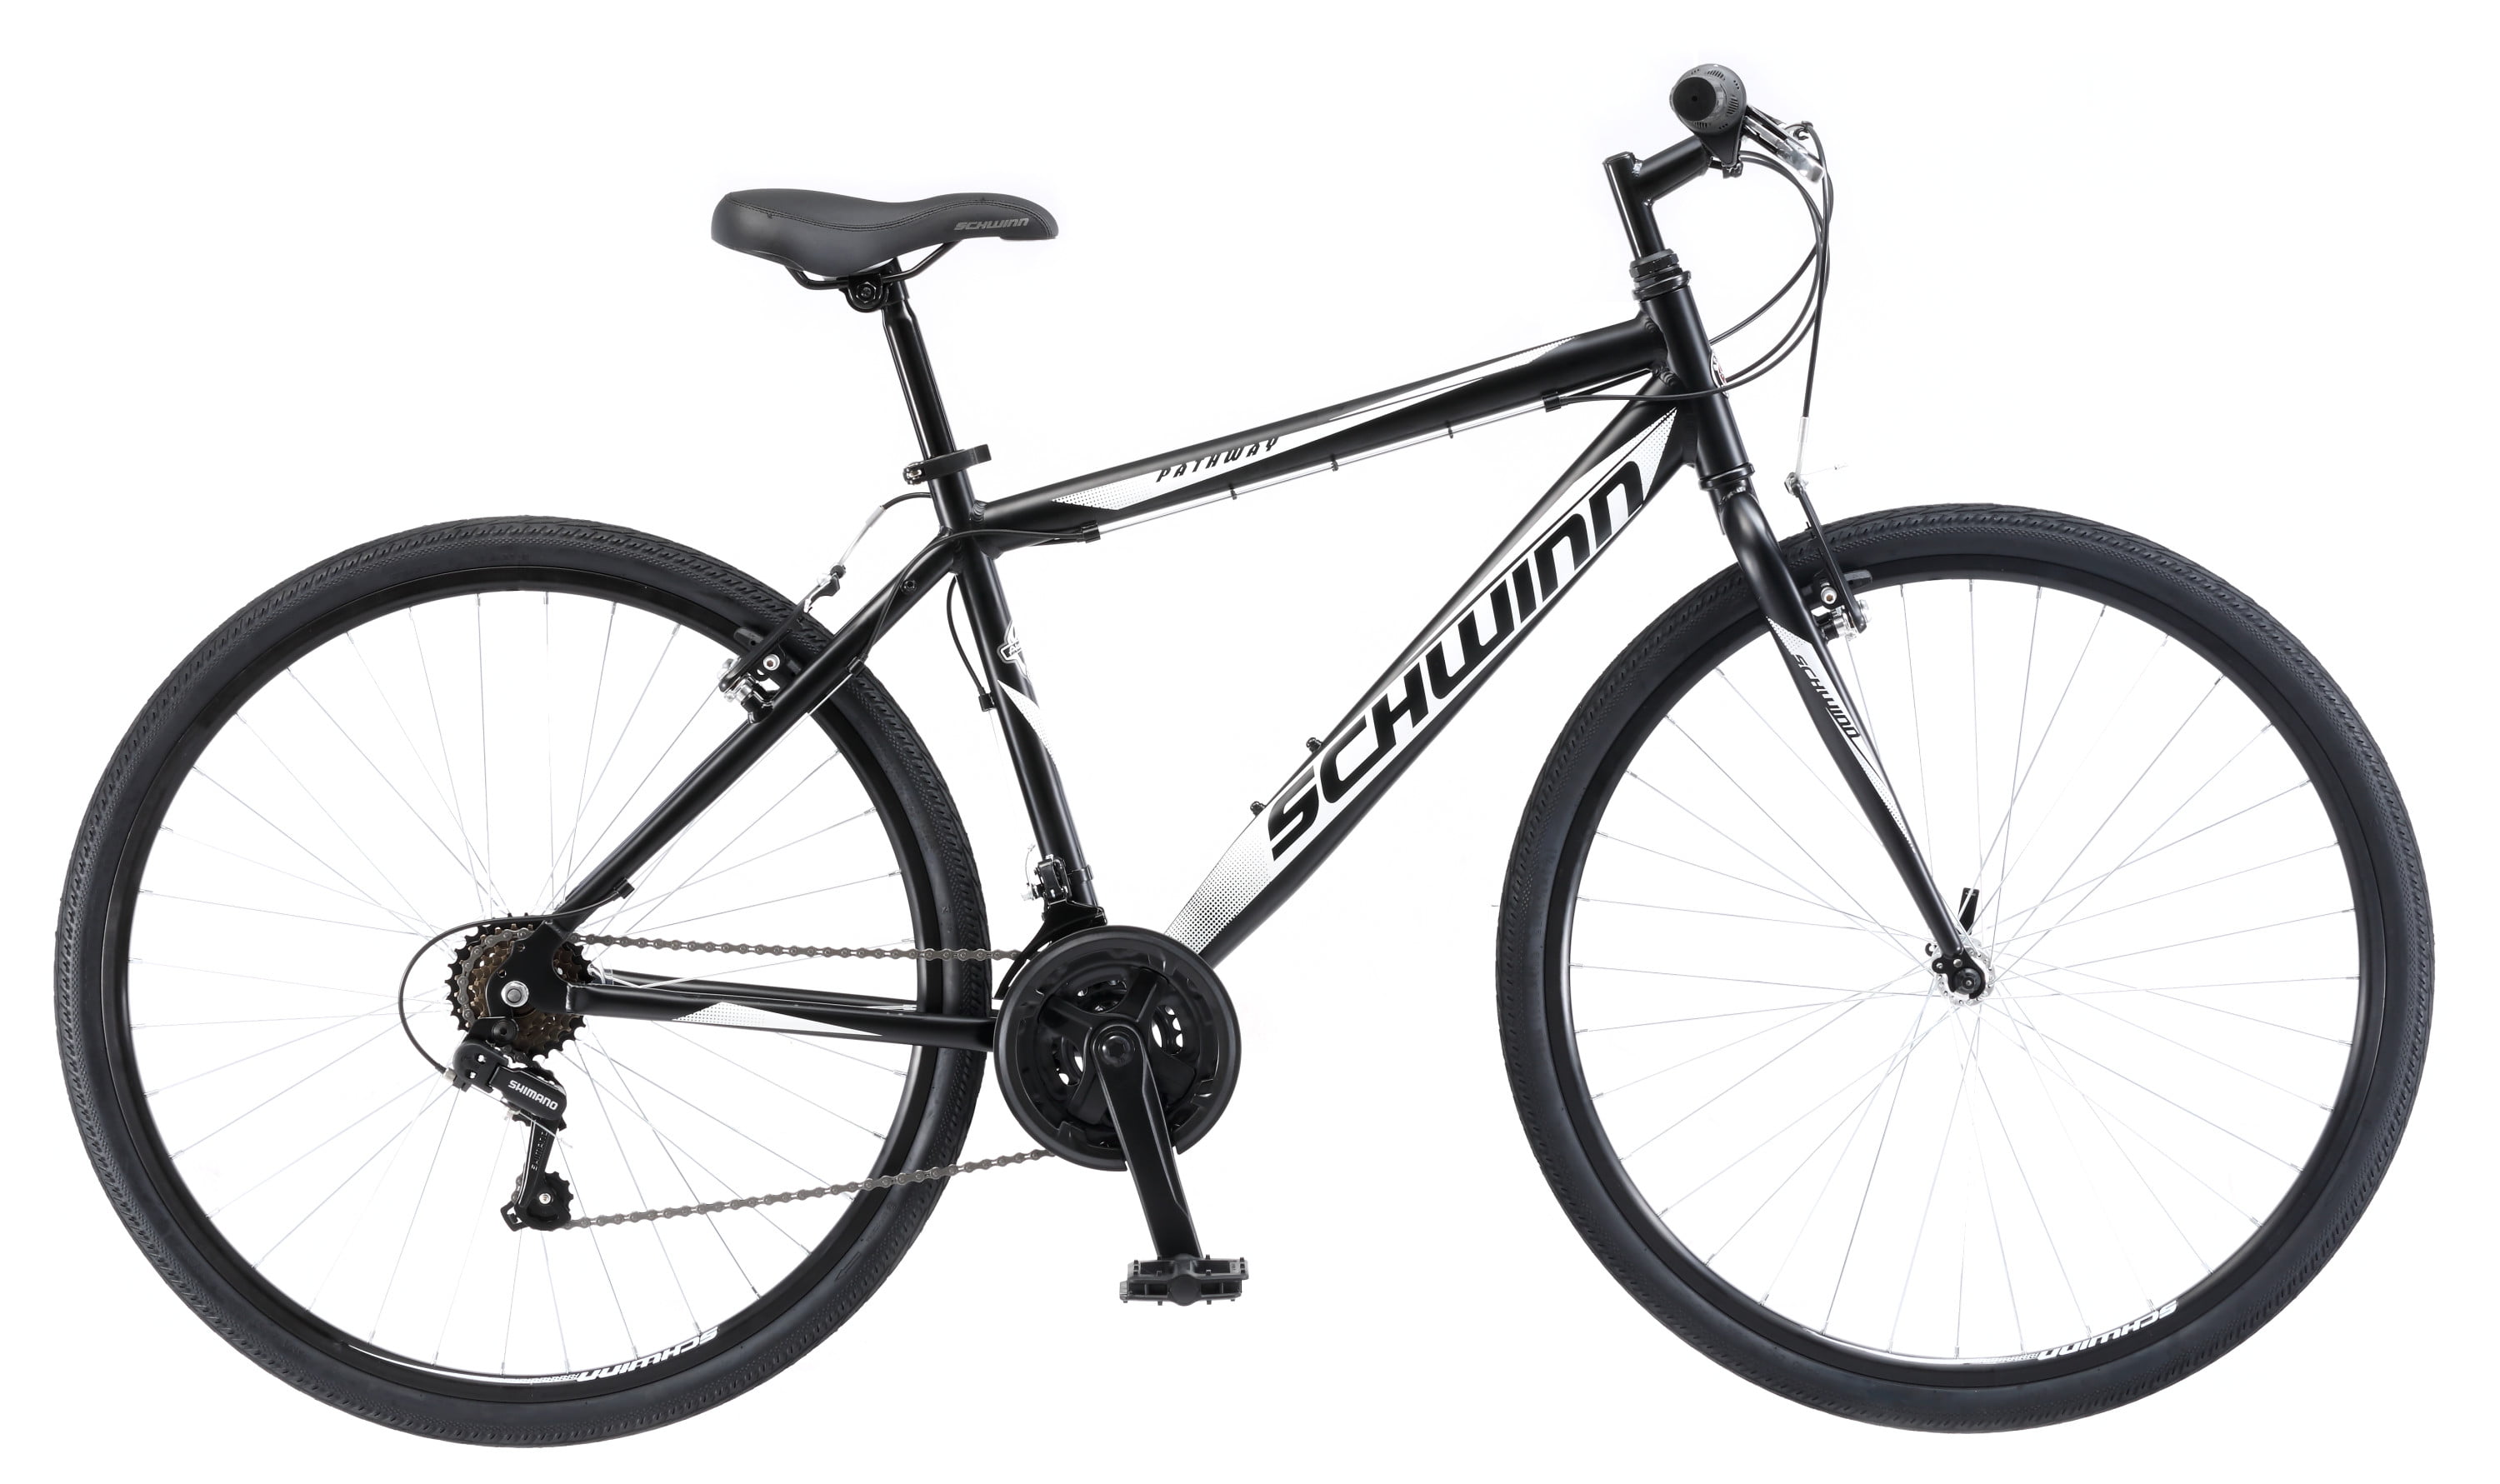 Schwinn Pathway Multi-Use Bike 18-Speed 700C Wheels Black/Silver 